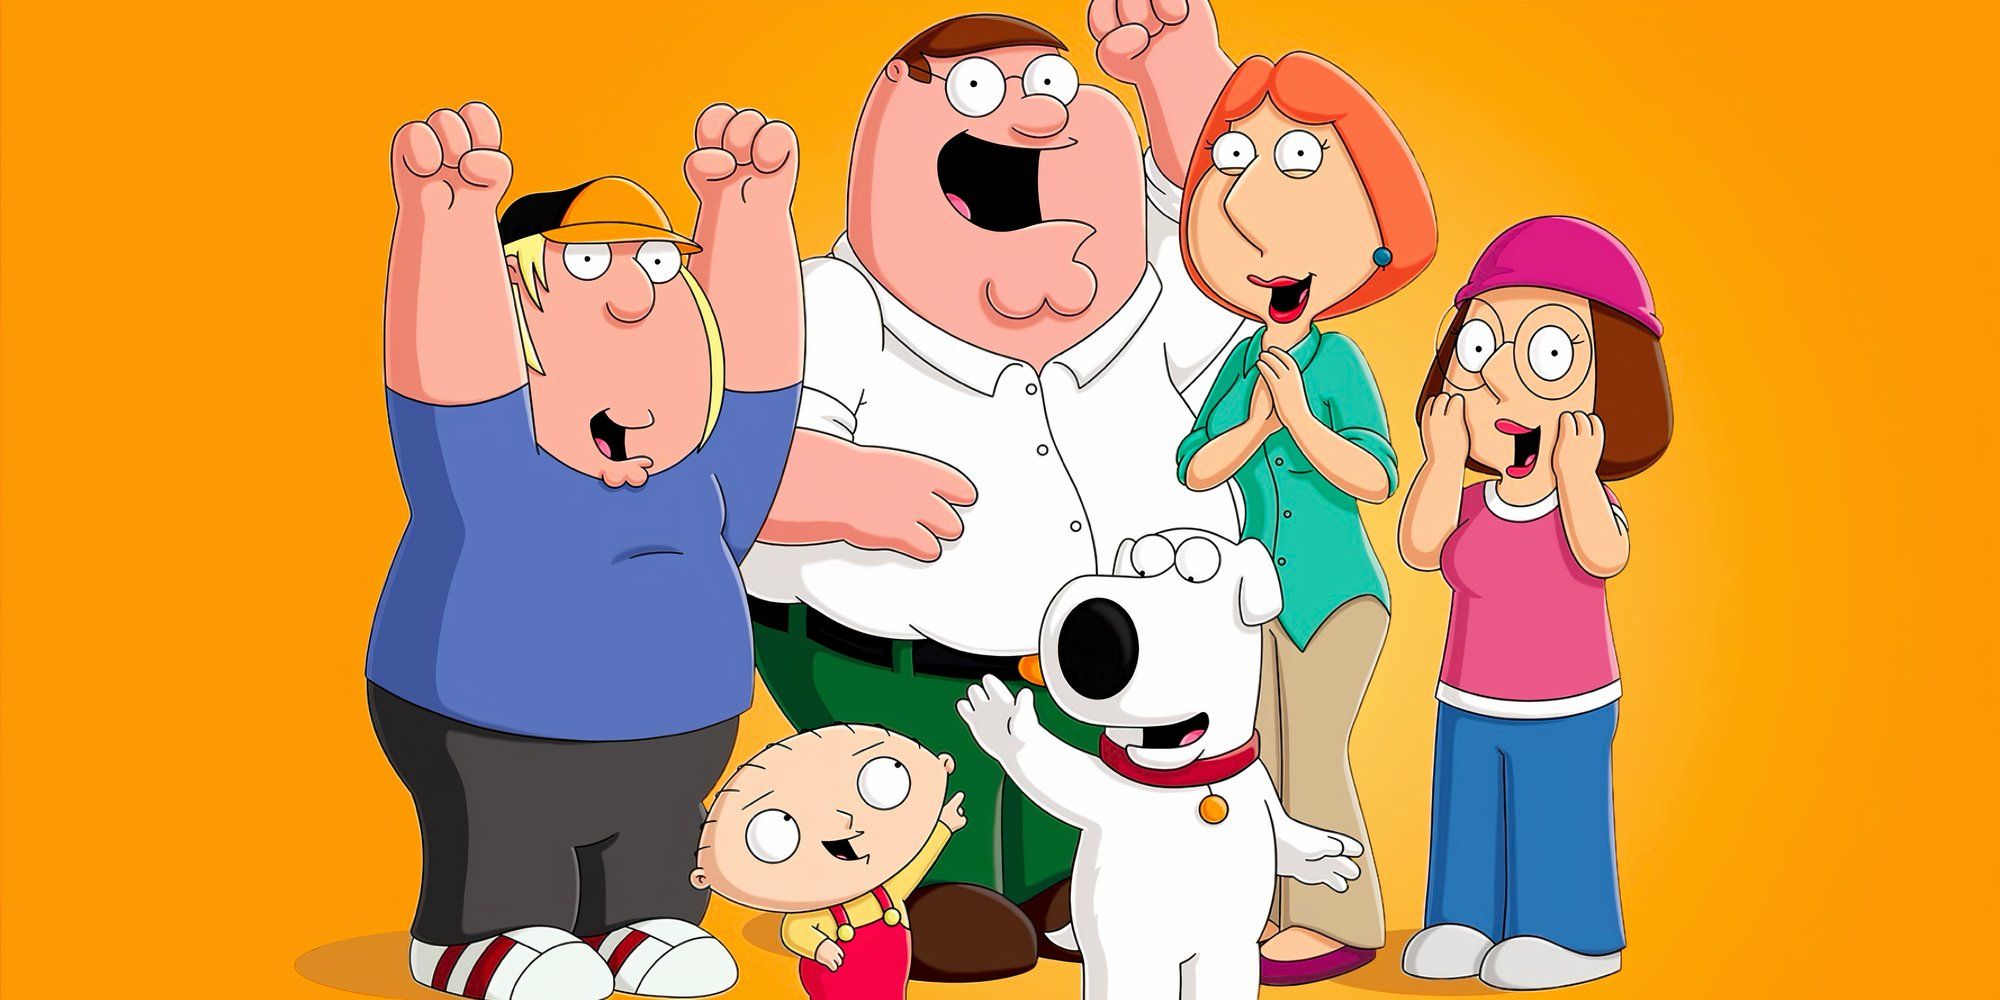 Personagens de Family Guy estão juntos torcendo em um fundo laranja